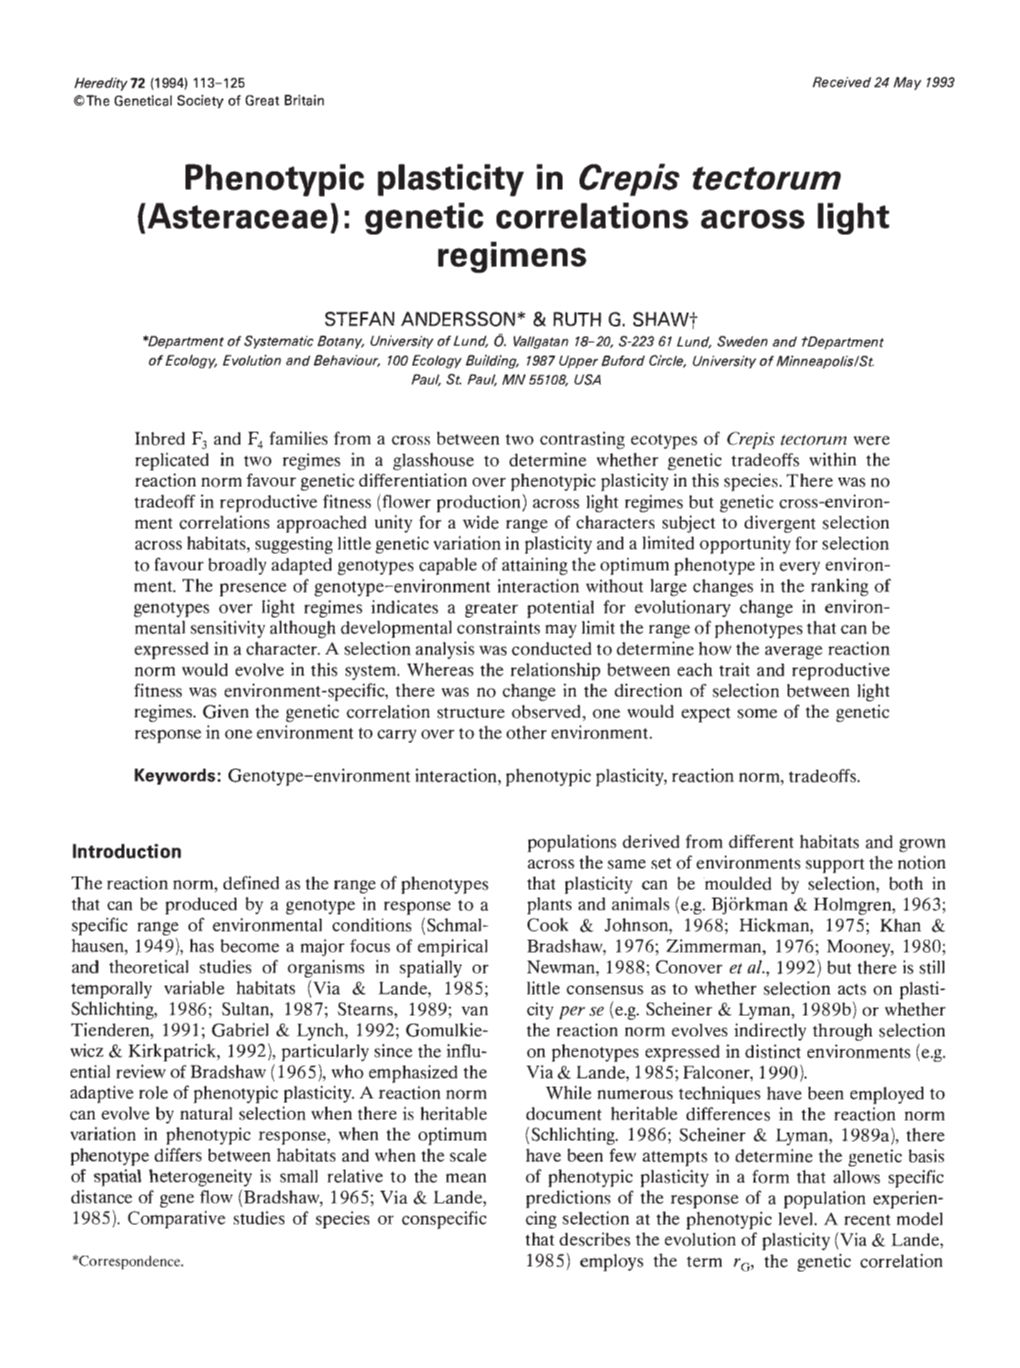 Phenotypic Plasticity in Crepis Tectorum (Asteraceae): Genetic Correlations Across Light Regimens